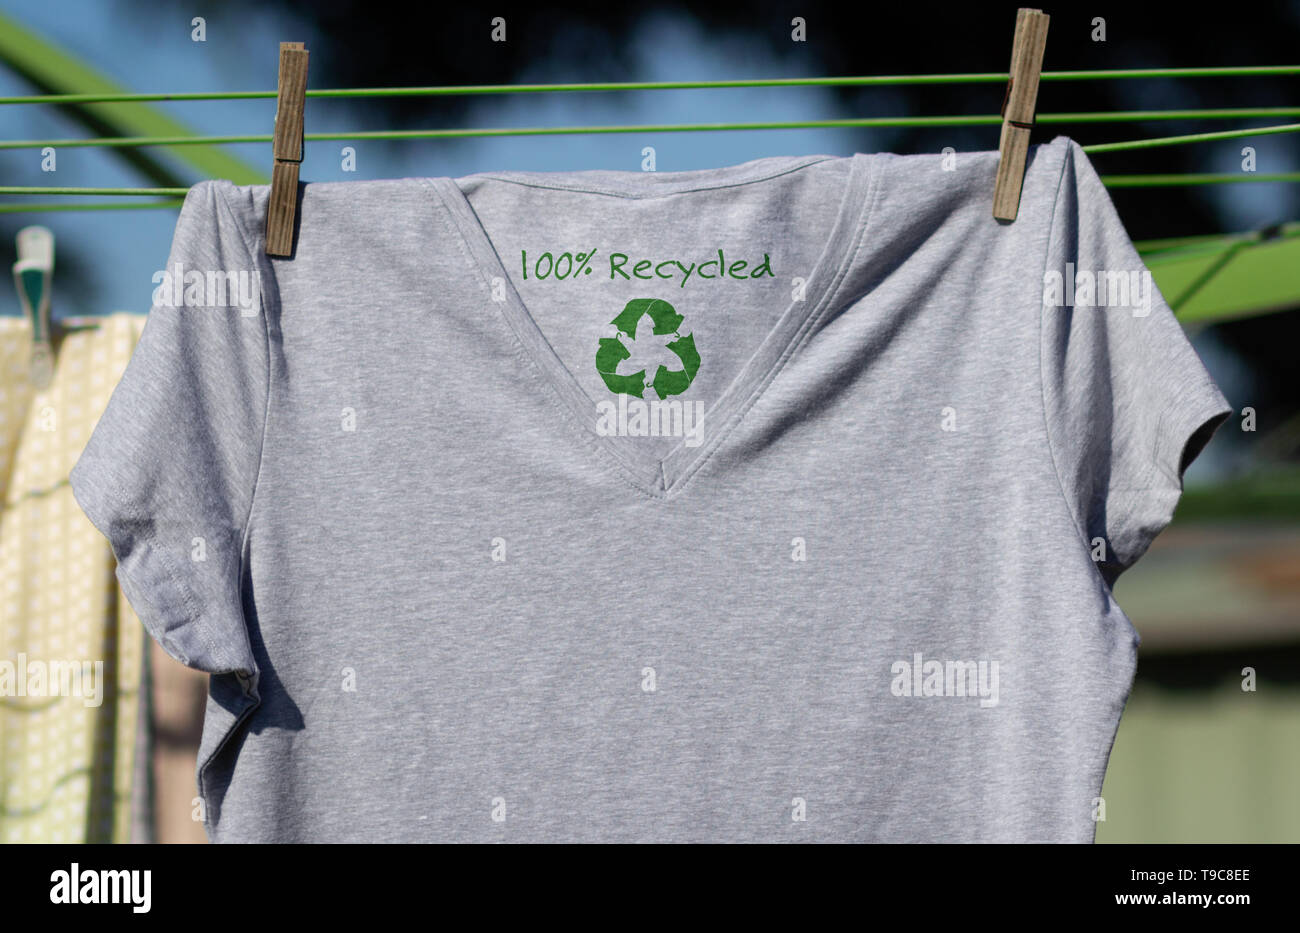 Reciclar ropa icono en camiseta con texto 100% reciclado, ilustración del concepto reutilizar, reciclar ropa y textiles para reducir los residuos Foto de stock